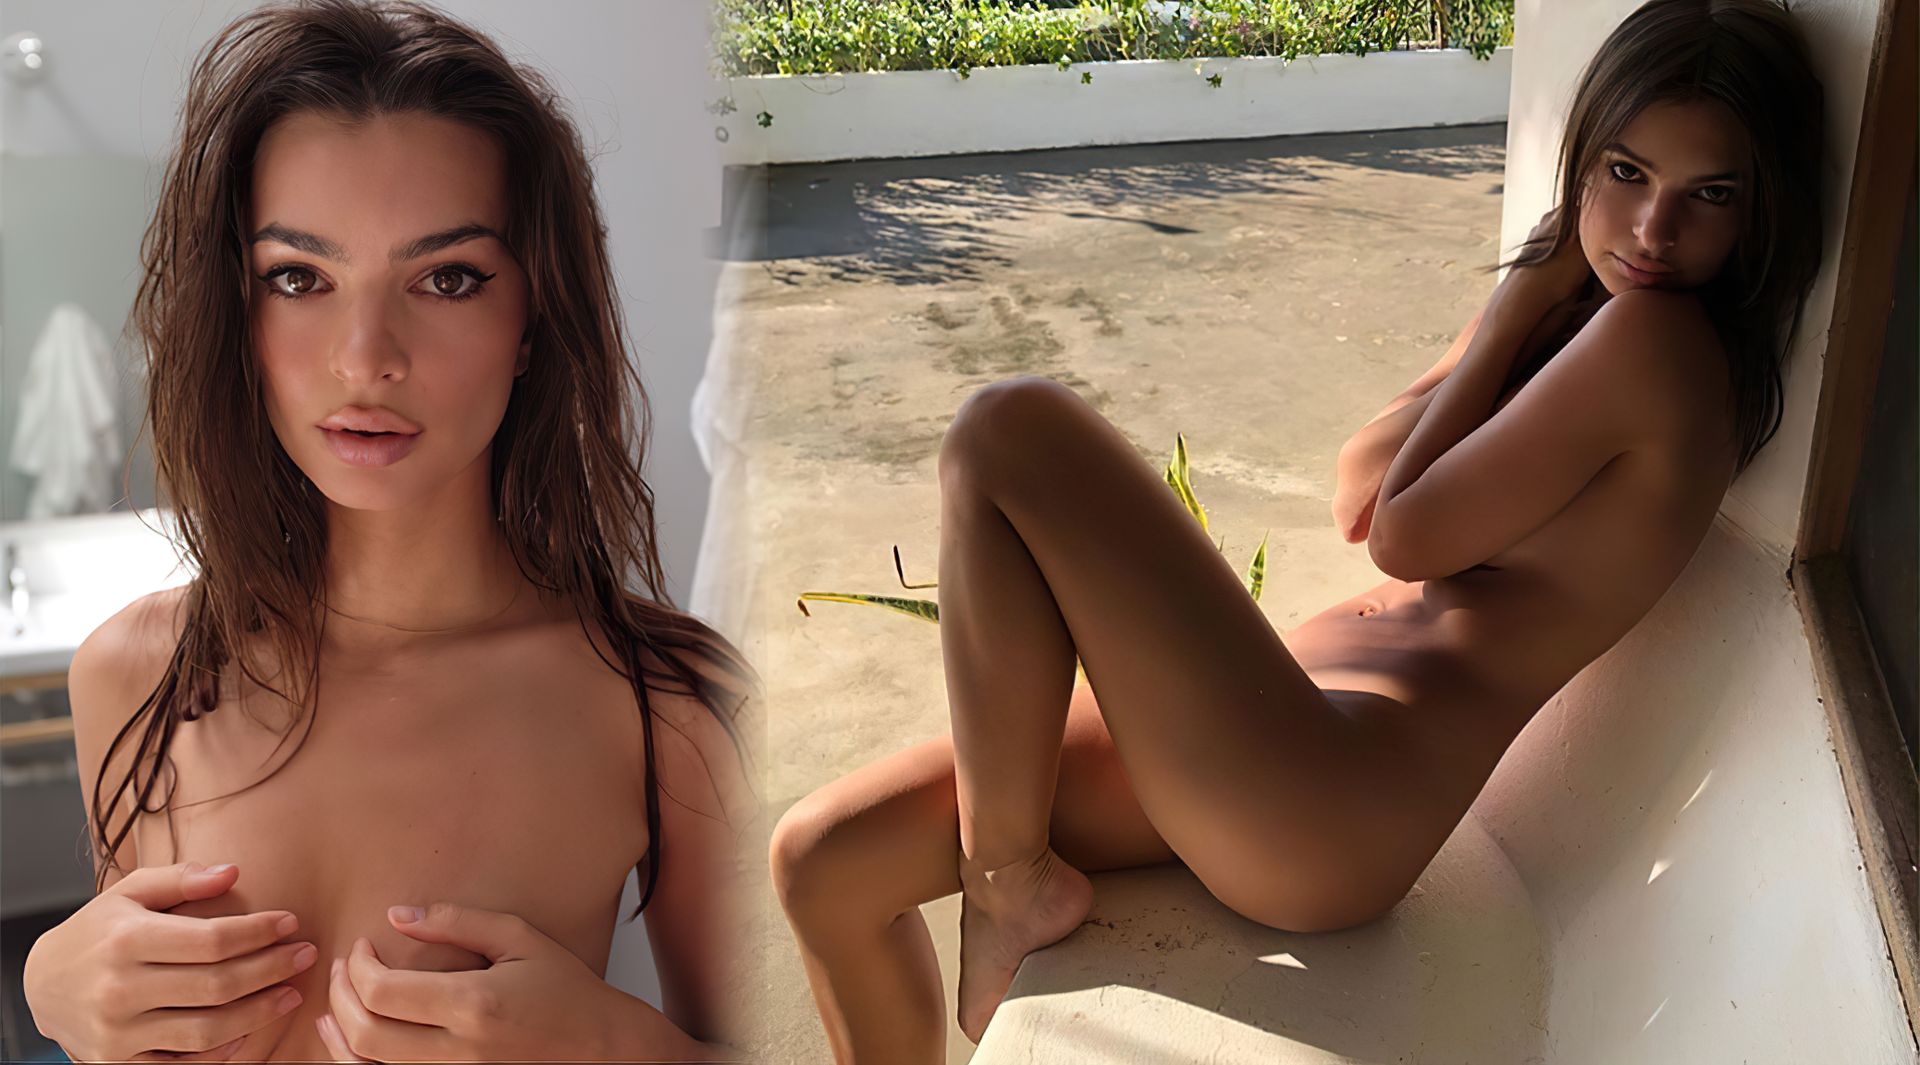 Σέξι μοντέλο, ηθοποιός, και γνωστή Fappening Star, σε γυμνές φώτος! 